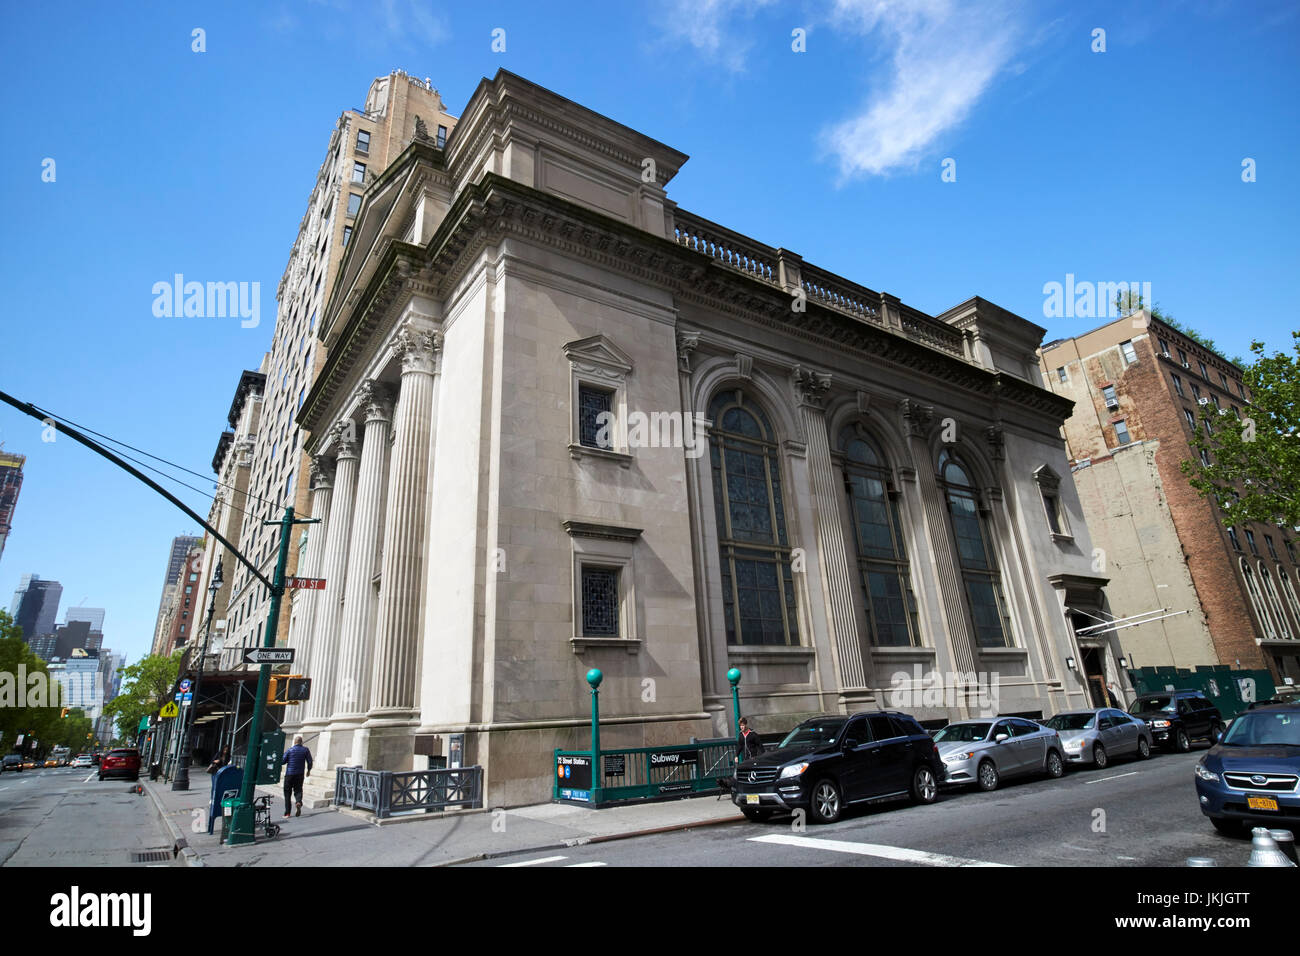 Congrégation Shearith Israel synagogue espagnole et portugaise, Central Park West upper west side de New York USA Banque D'Images